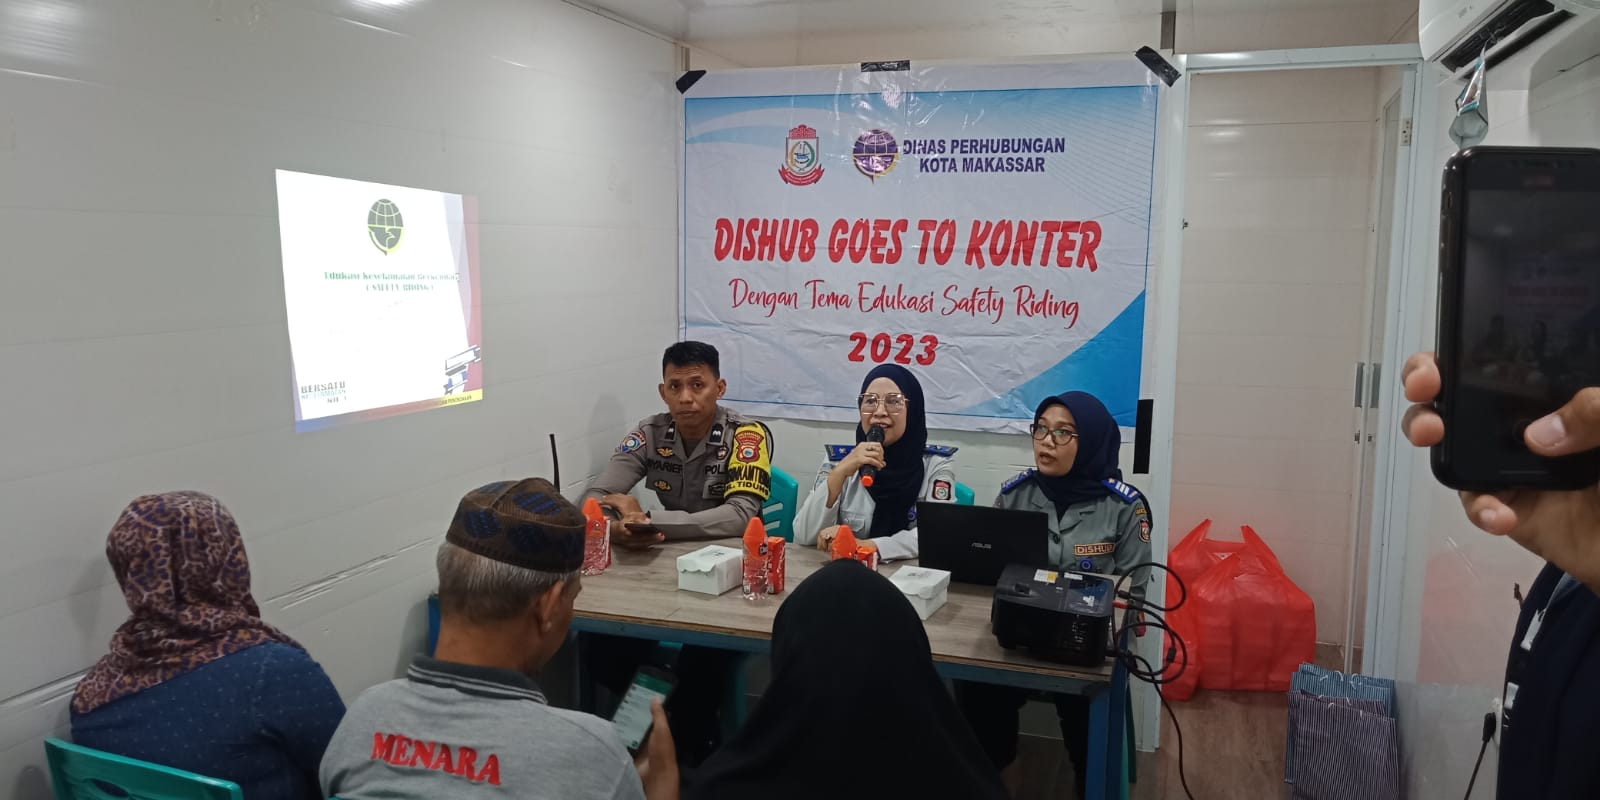 Kegiatan  di Kontener bersama Dinas Perhubungan Kota Makassar  Dengan  Tema Edukasi Safety Riding.